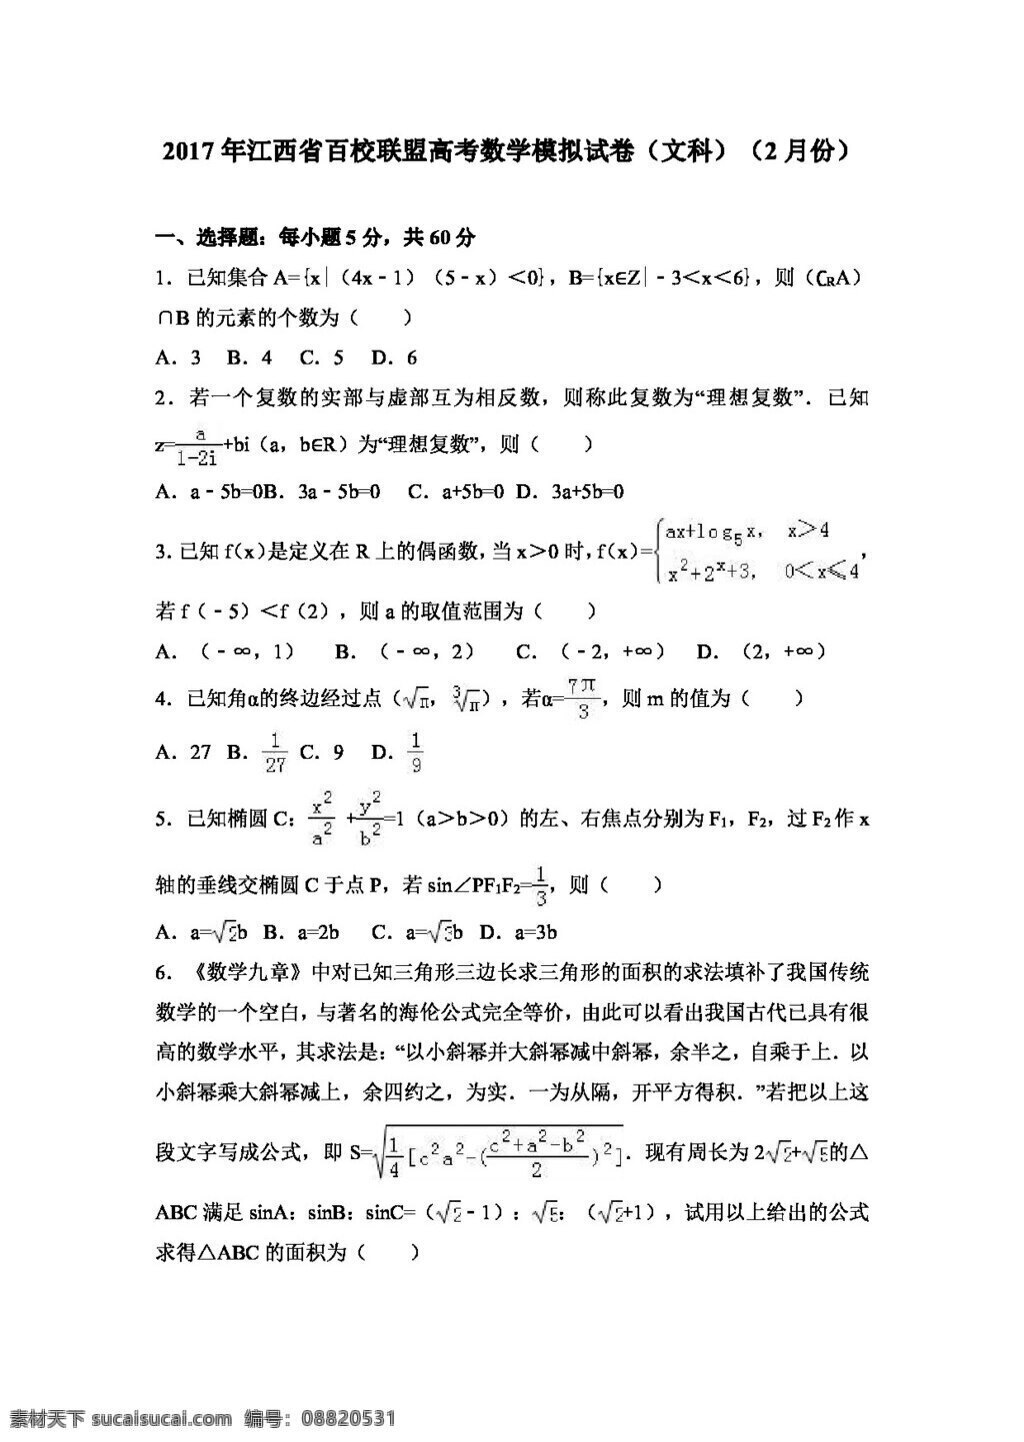 数学 人教 版 2017 年 江西省 百 校 联盟 高考 模拟试卷 文科 月份 高考专区 人教版 试卷